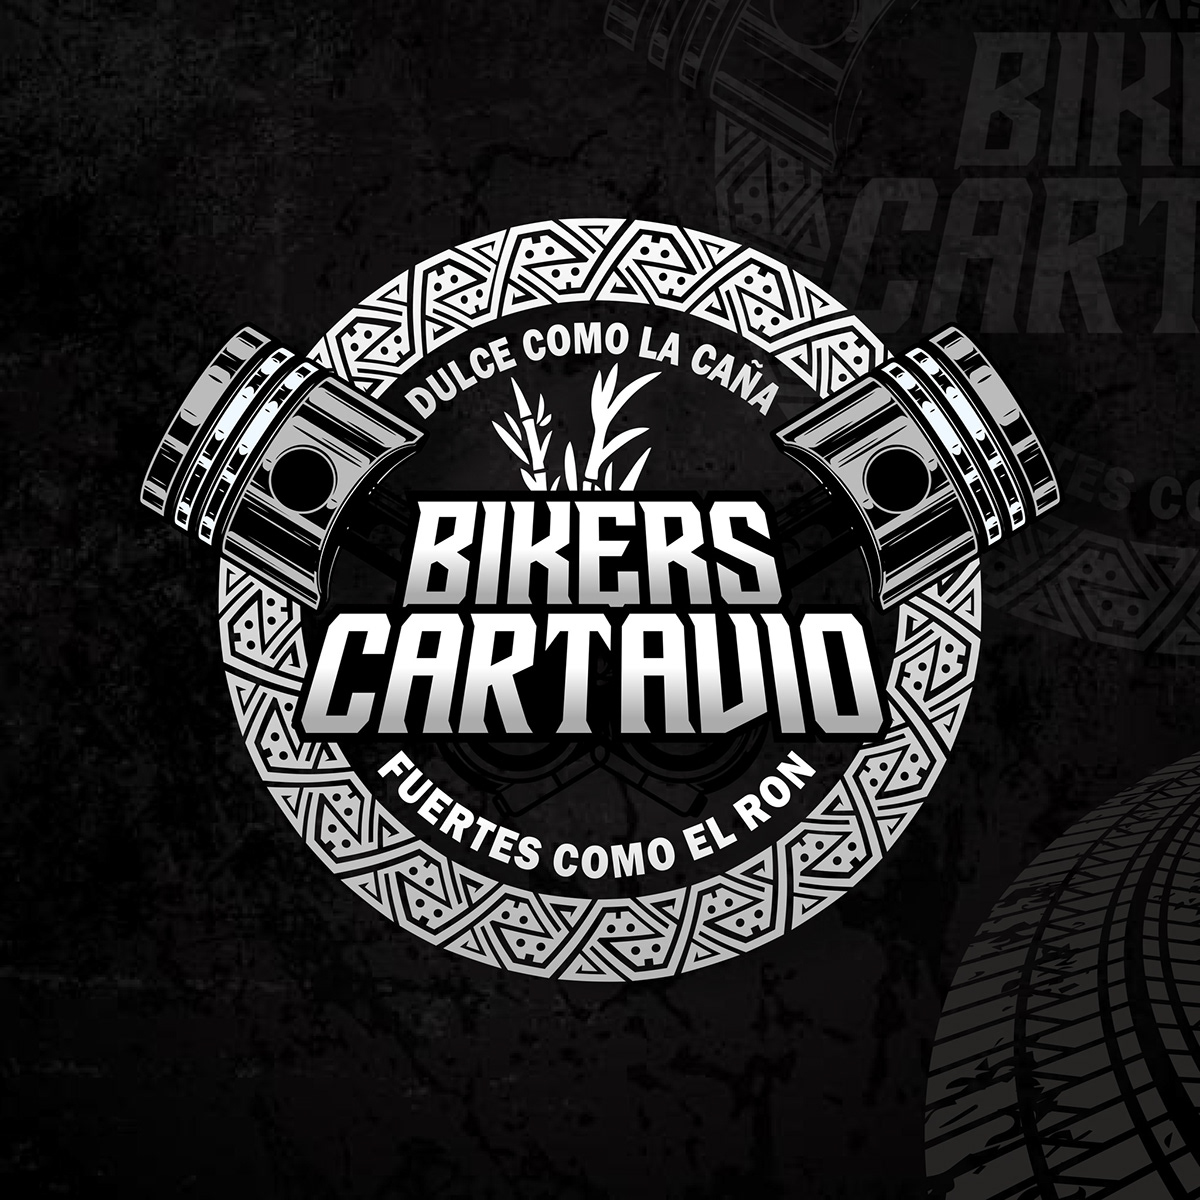 Logo Design letering diseño gráfico Trujillo Perú motorcycle Bike diseñador grafico Cartavio